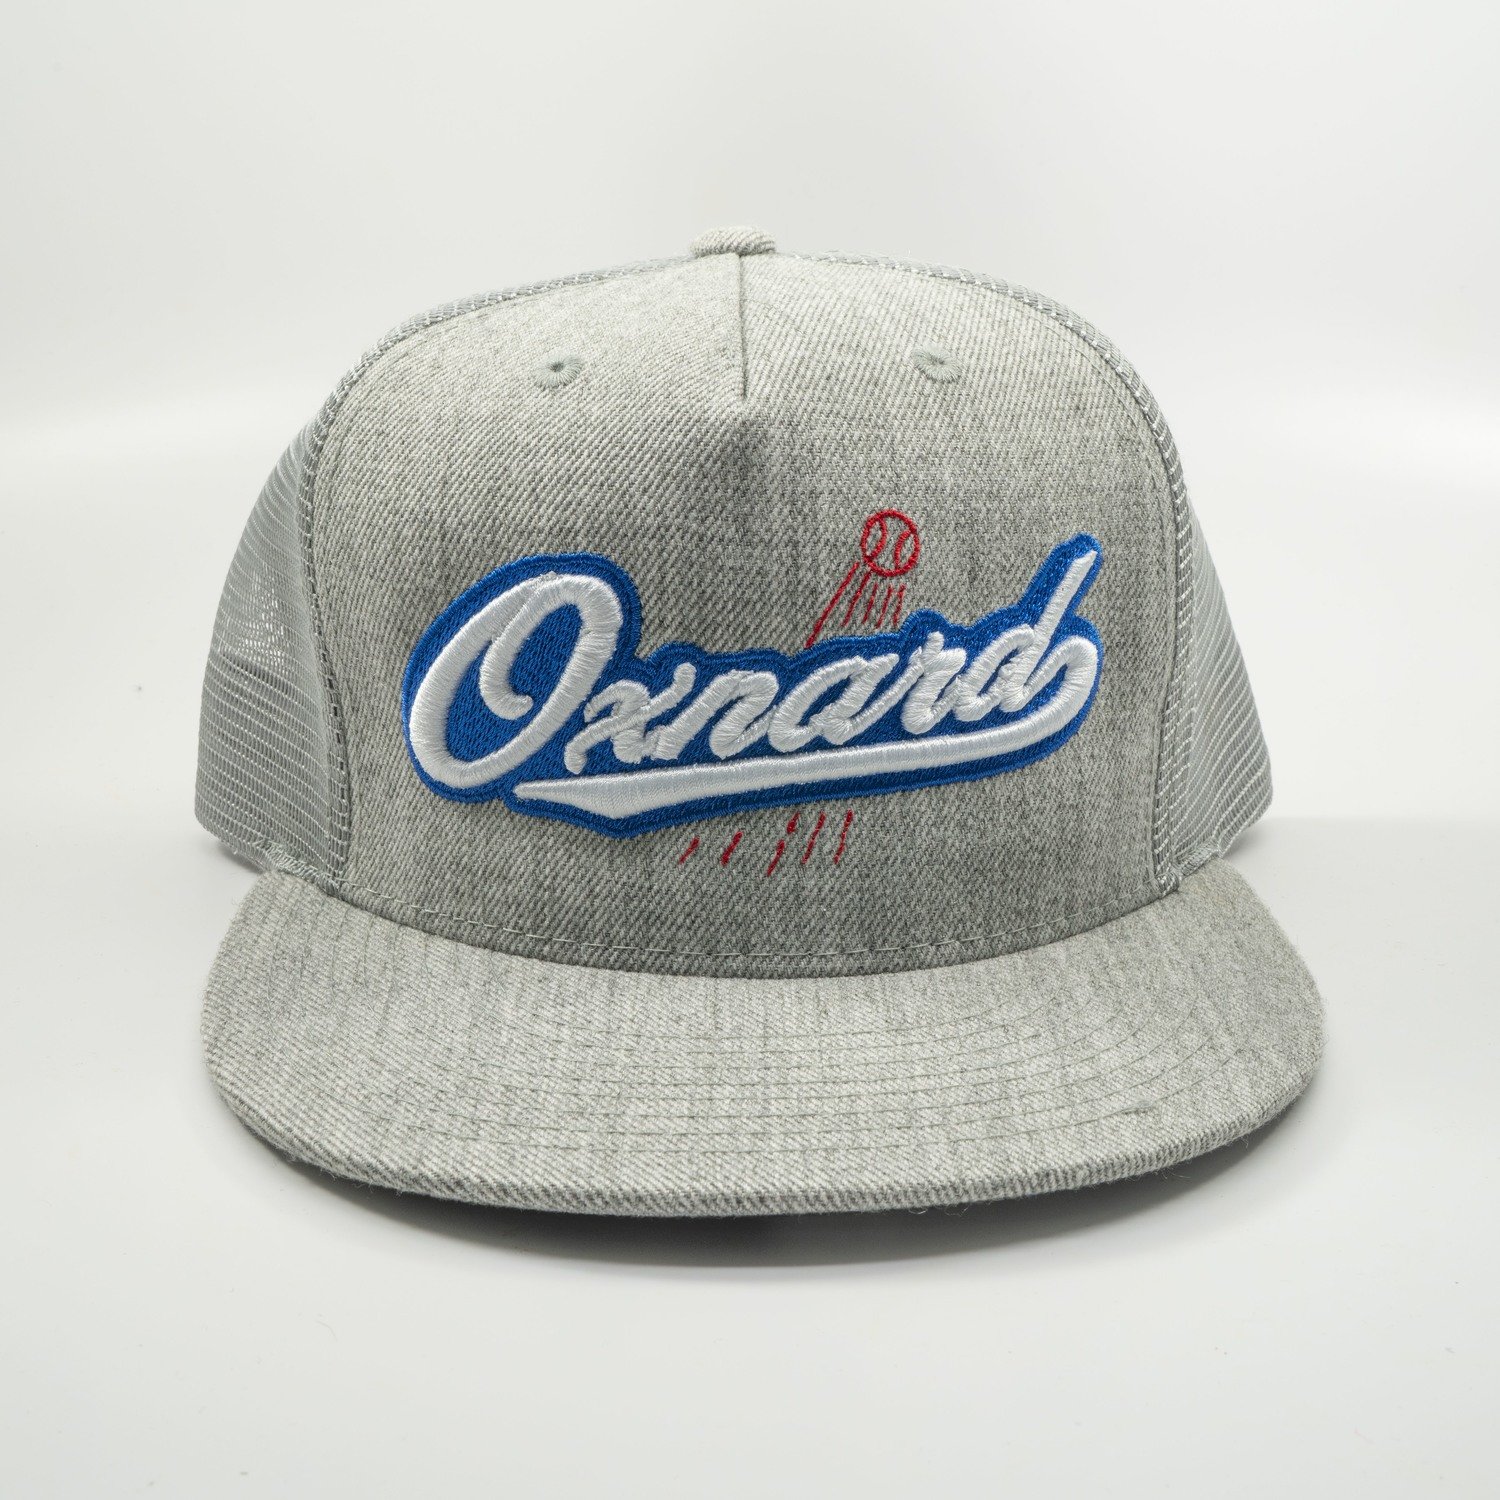 Oxnard Baller Hat